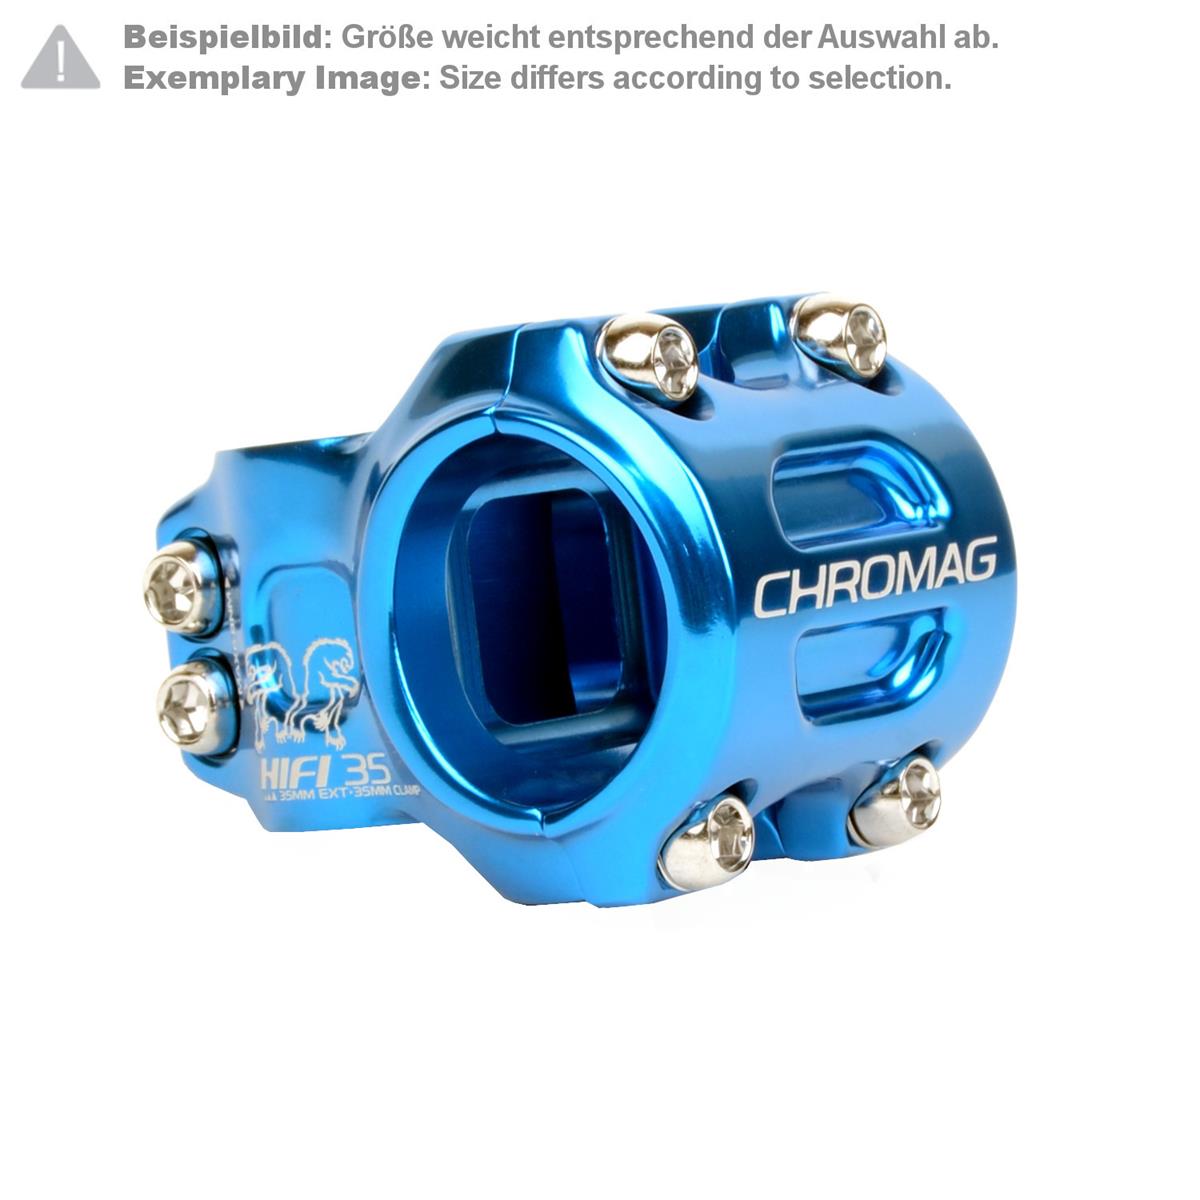 Chromag MTB Stem HIFI 35.0 mm, 50 mm Reach, Blue